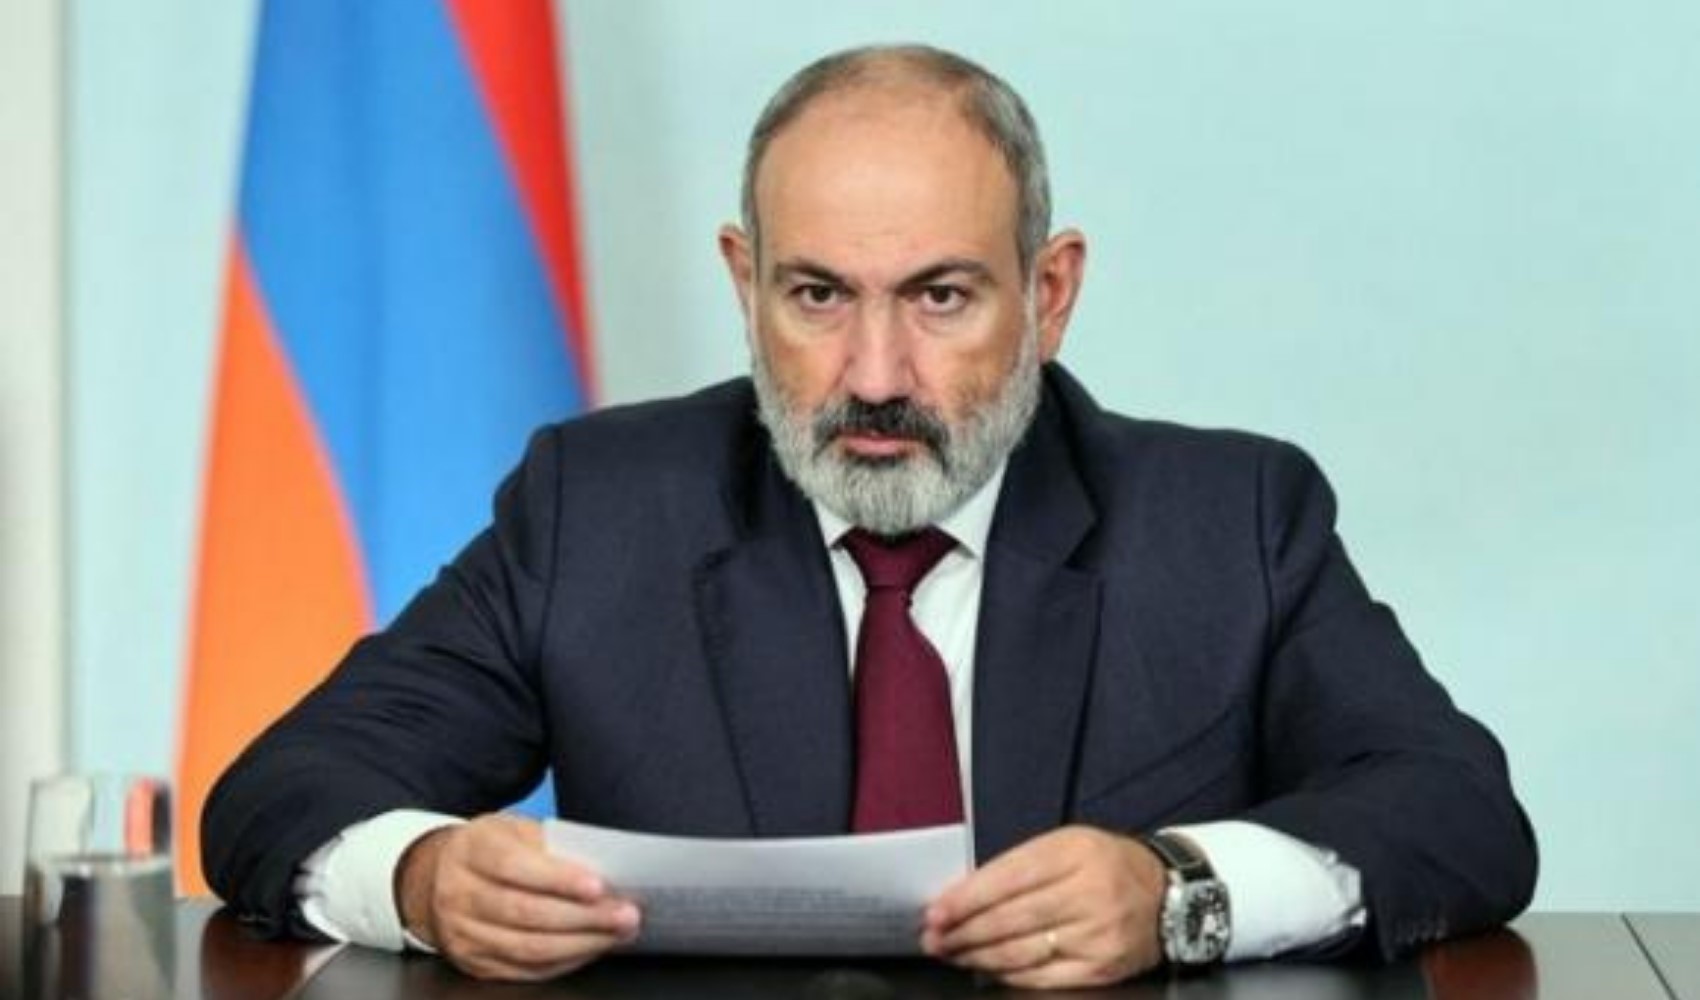 Ermenistan Başbakanı Paşinyan, 1915 olaylarıyla ilgili skandal ifadeler kullandı: 'Büyük felaket...'